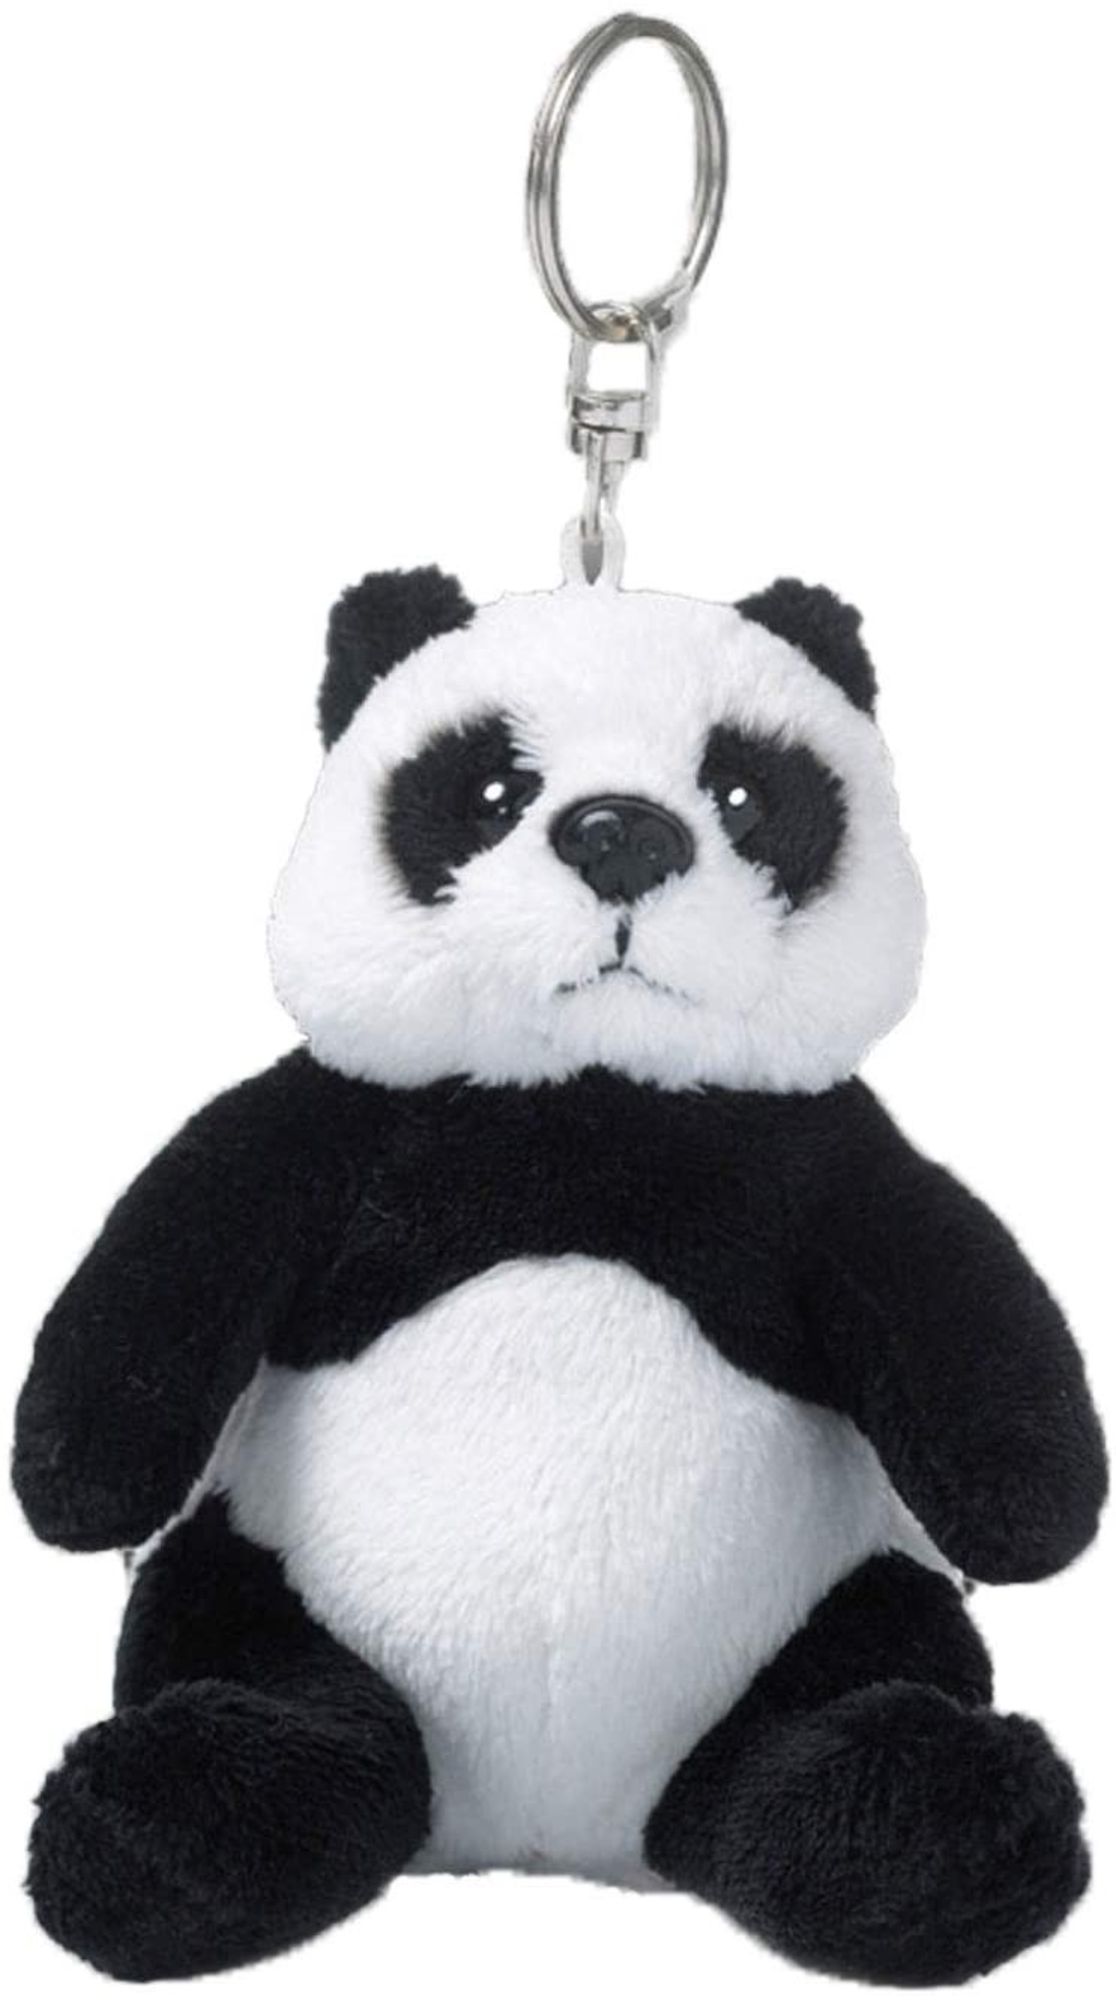 WWF Panda Necklace | Panda Stuff